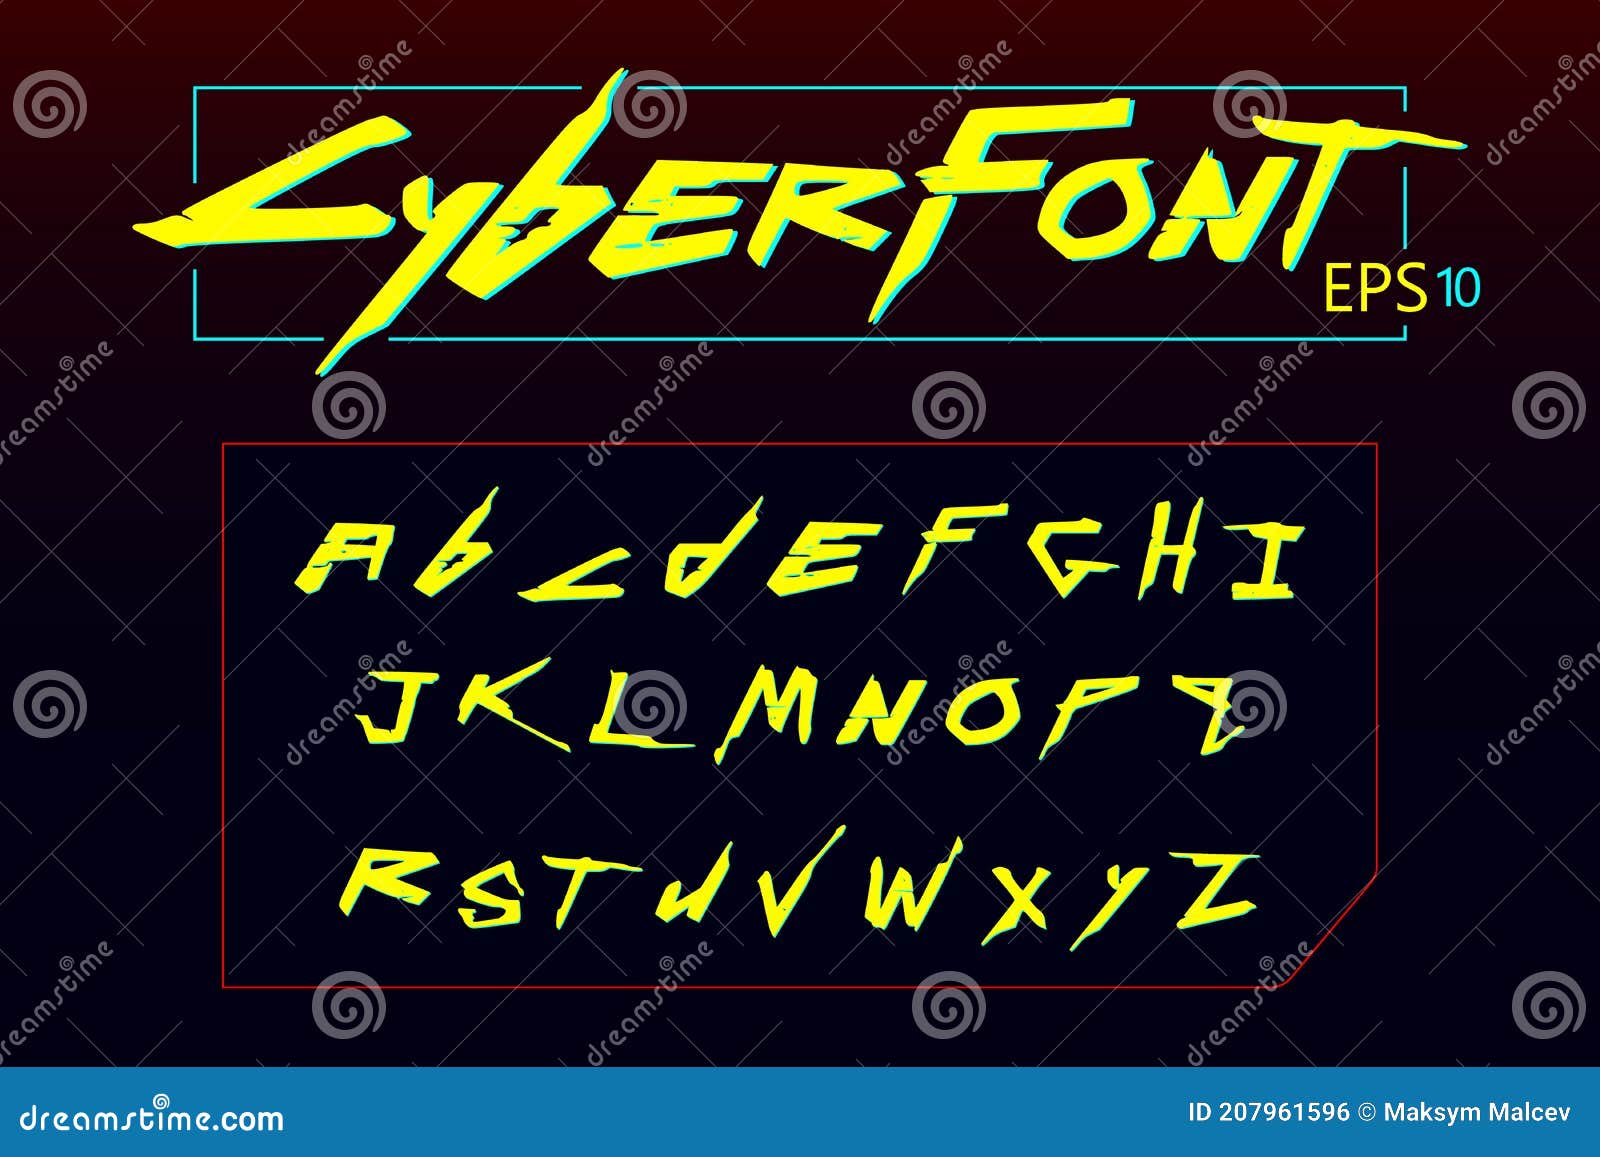 Cyberpunk font фото 10